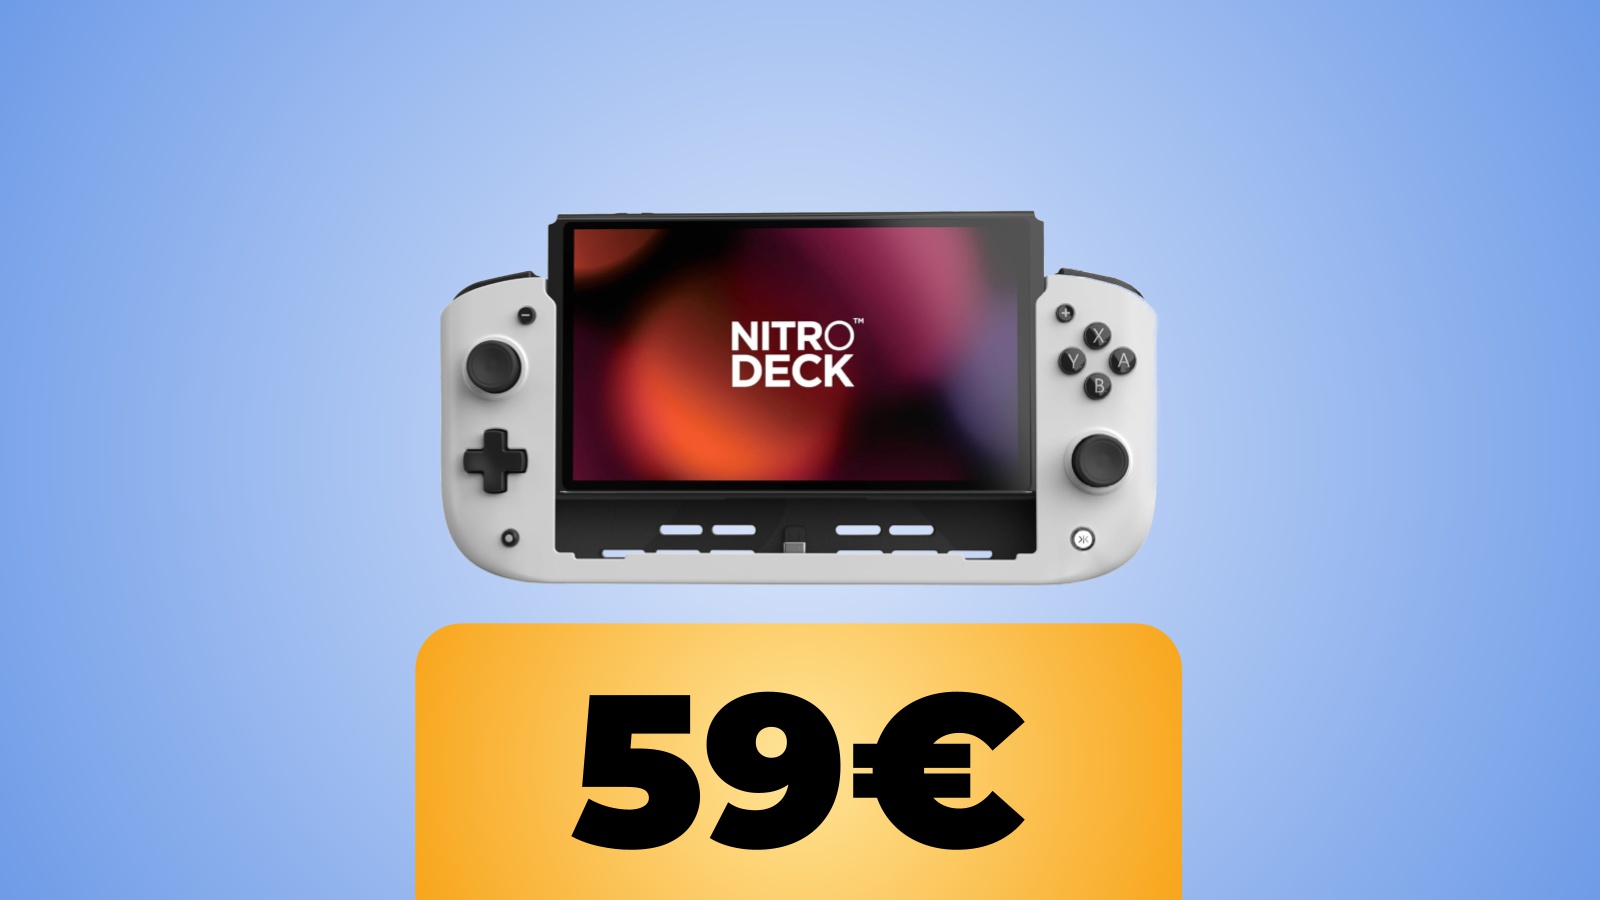 CRKD Nitro Deck Standard Edition per Nintendo Switch (base e OLED) al prezzo minimo su Amazon